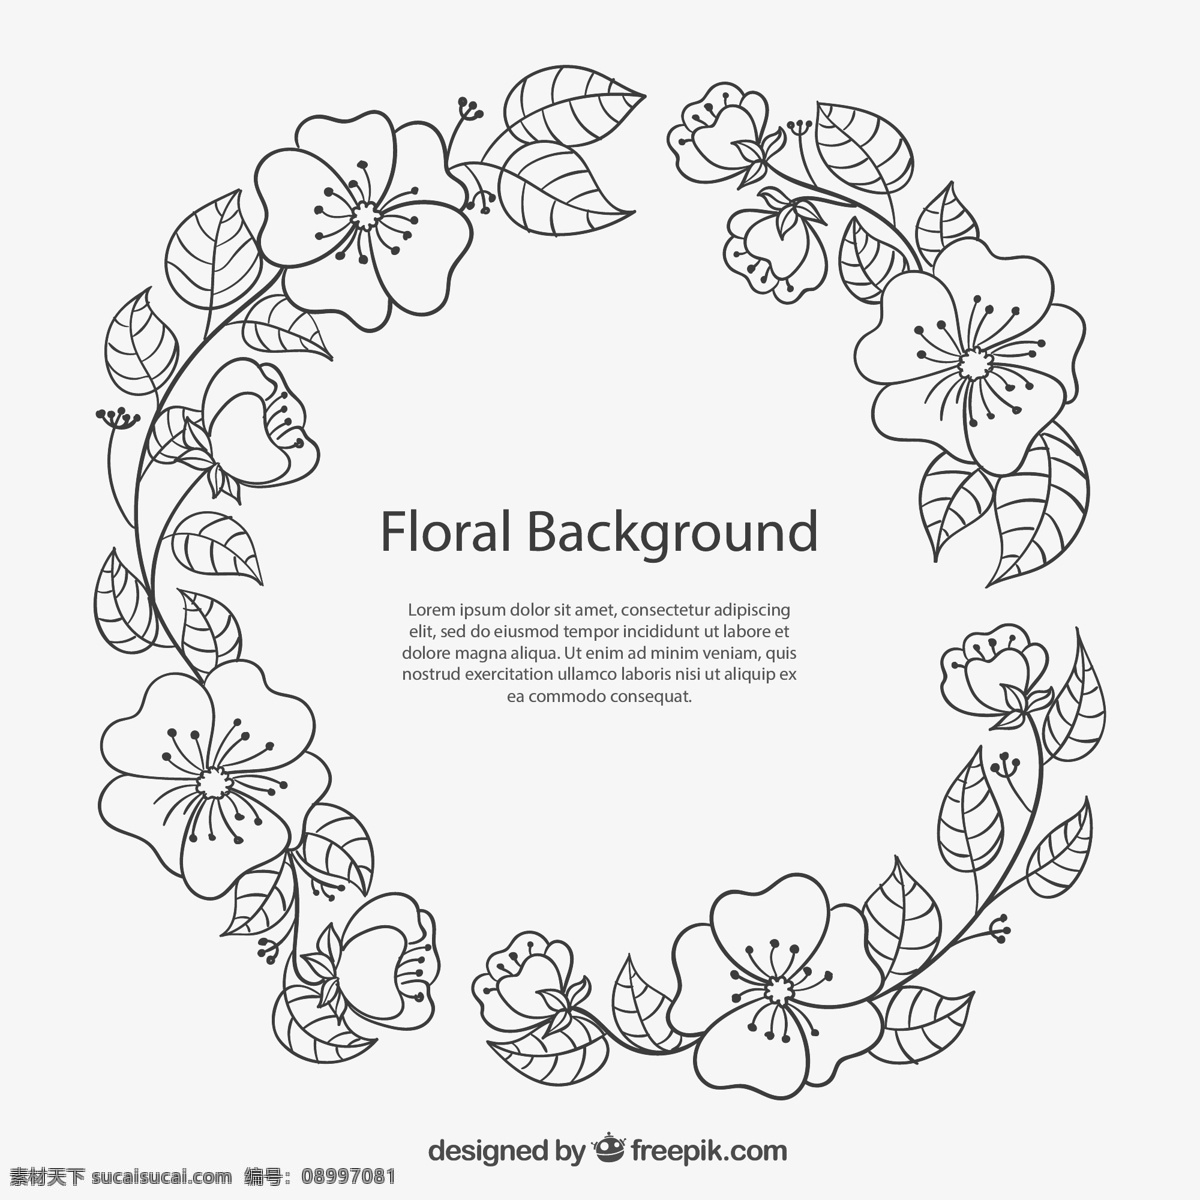 手绘花卉框架 背景 框架 花卉 边境 自然 叶子 花圈 绘画 性质 边框 抽纱 边界 图标 高清 源文件